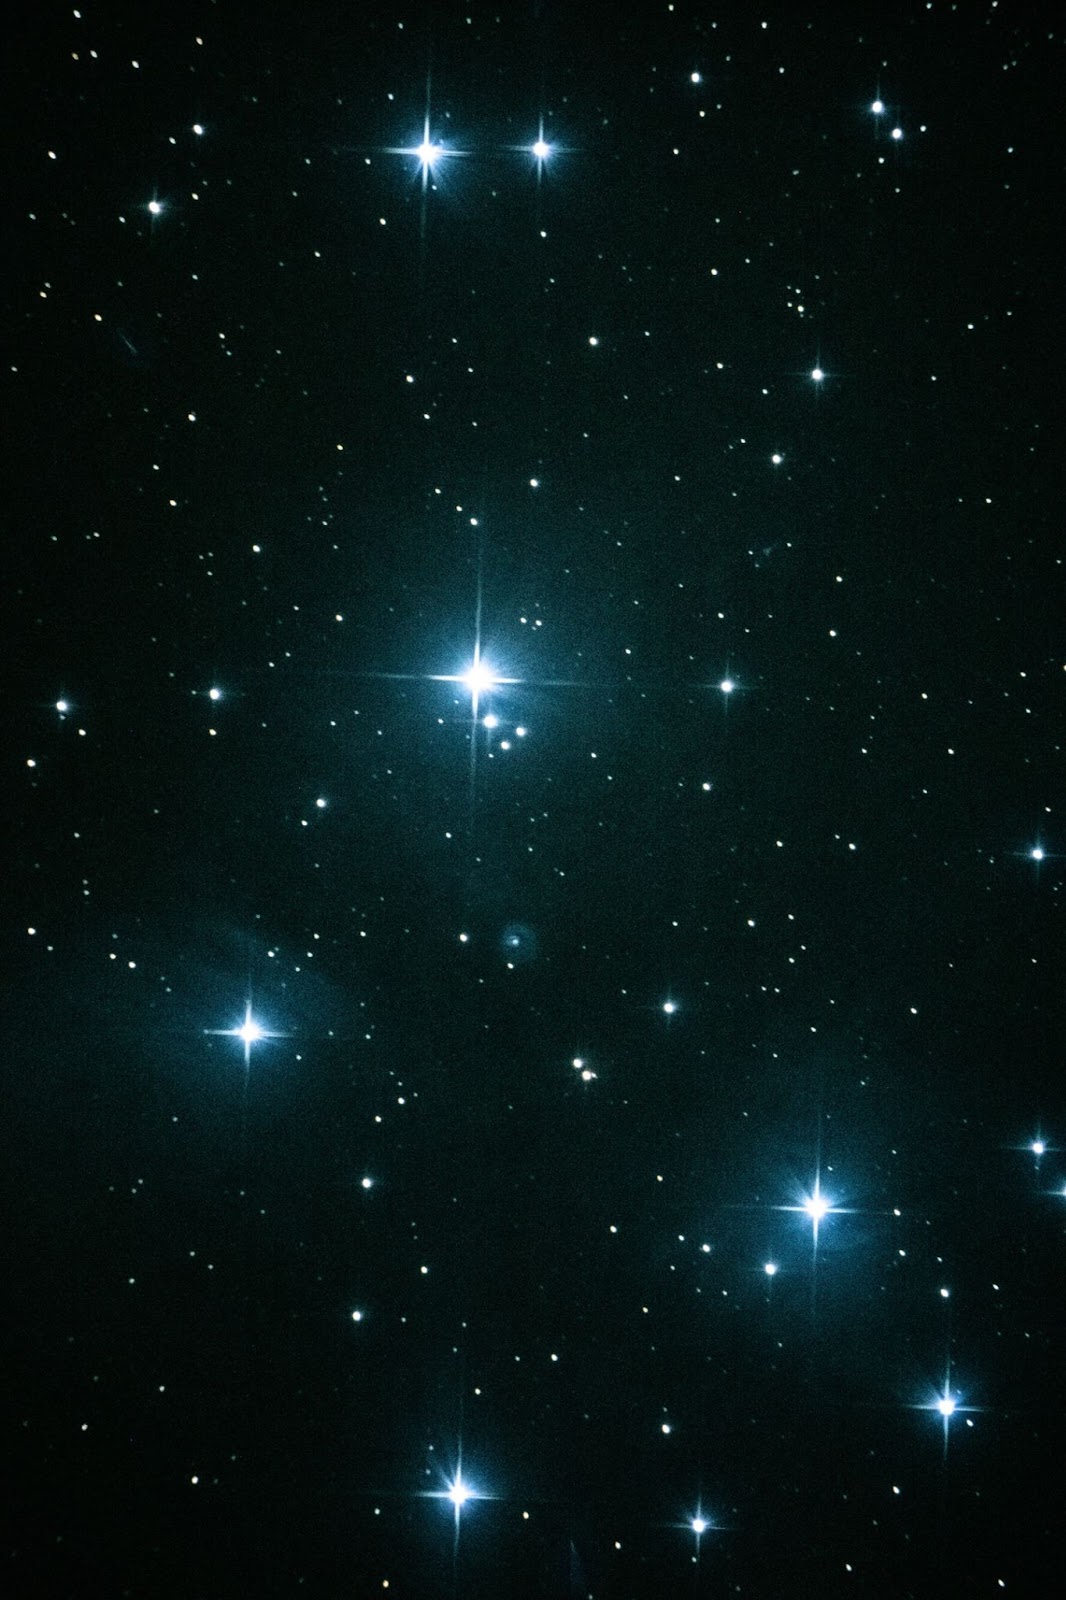 Рассеянное звёздное скопление Плеяды расположено в созвездии Тельца. В невооруженный глаз они похожи на характерный ковшик. Автор снимка Tateshi Yokotaishi.